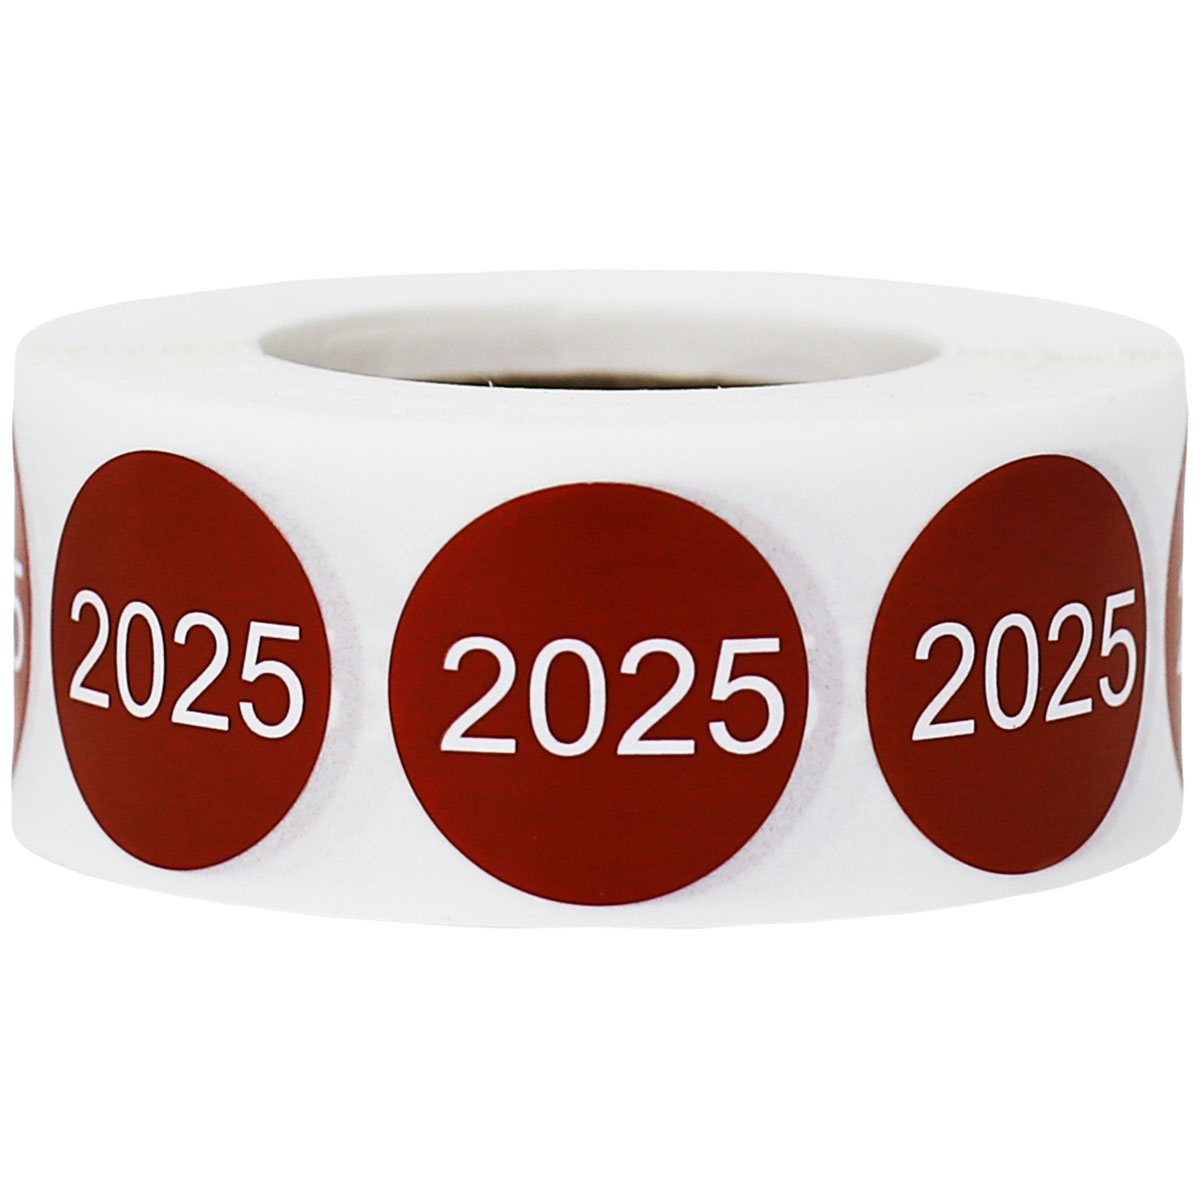 Year 2025 Stickers 3/4" Round